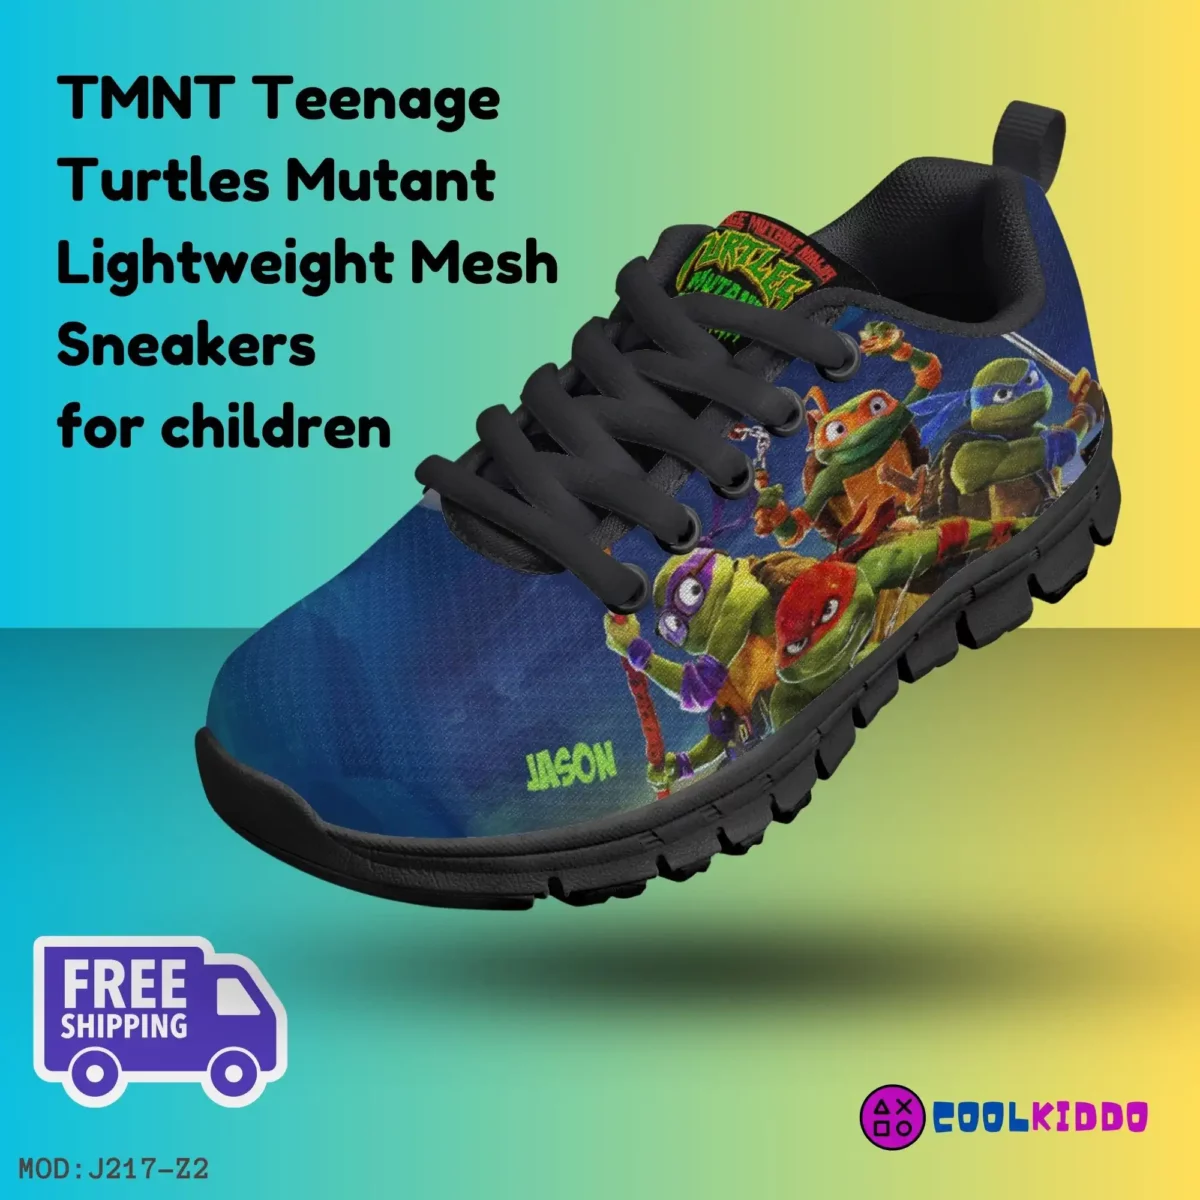 Personalized Teenage Mutant Ninja Turtles Inspired Kids’ Lightweight Mesh Sneakers Cool Kiddo 10